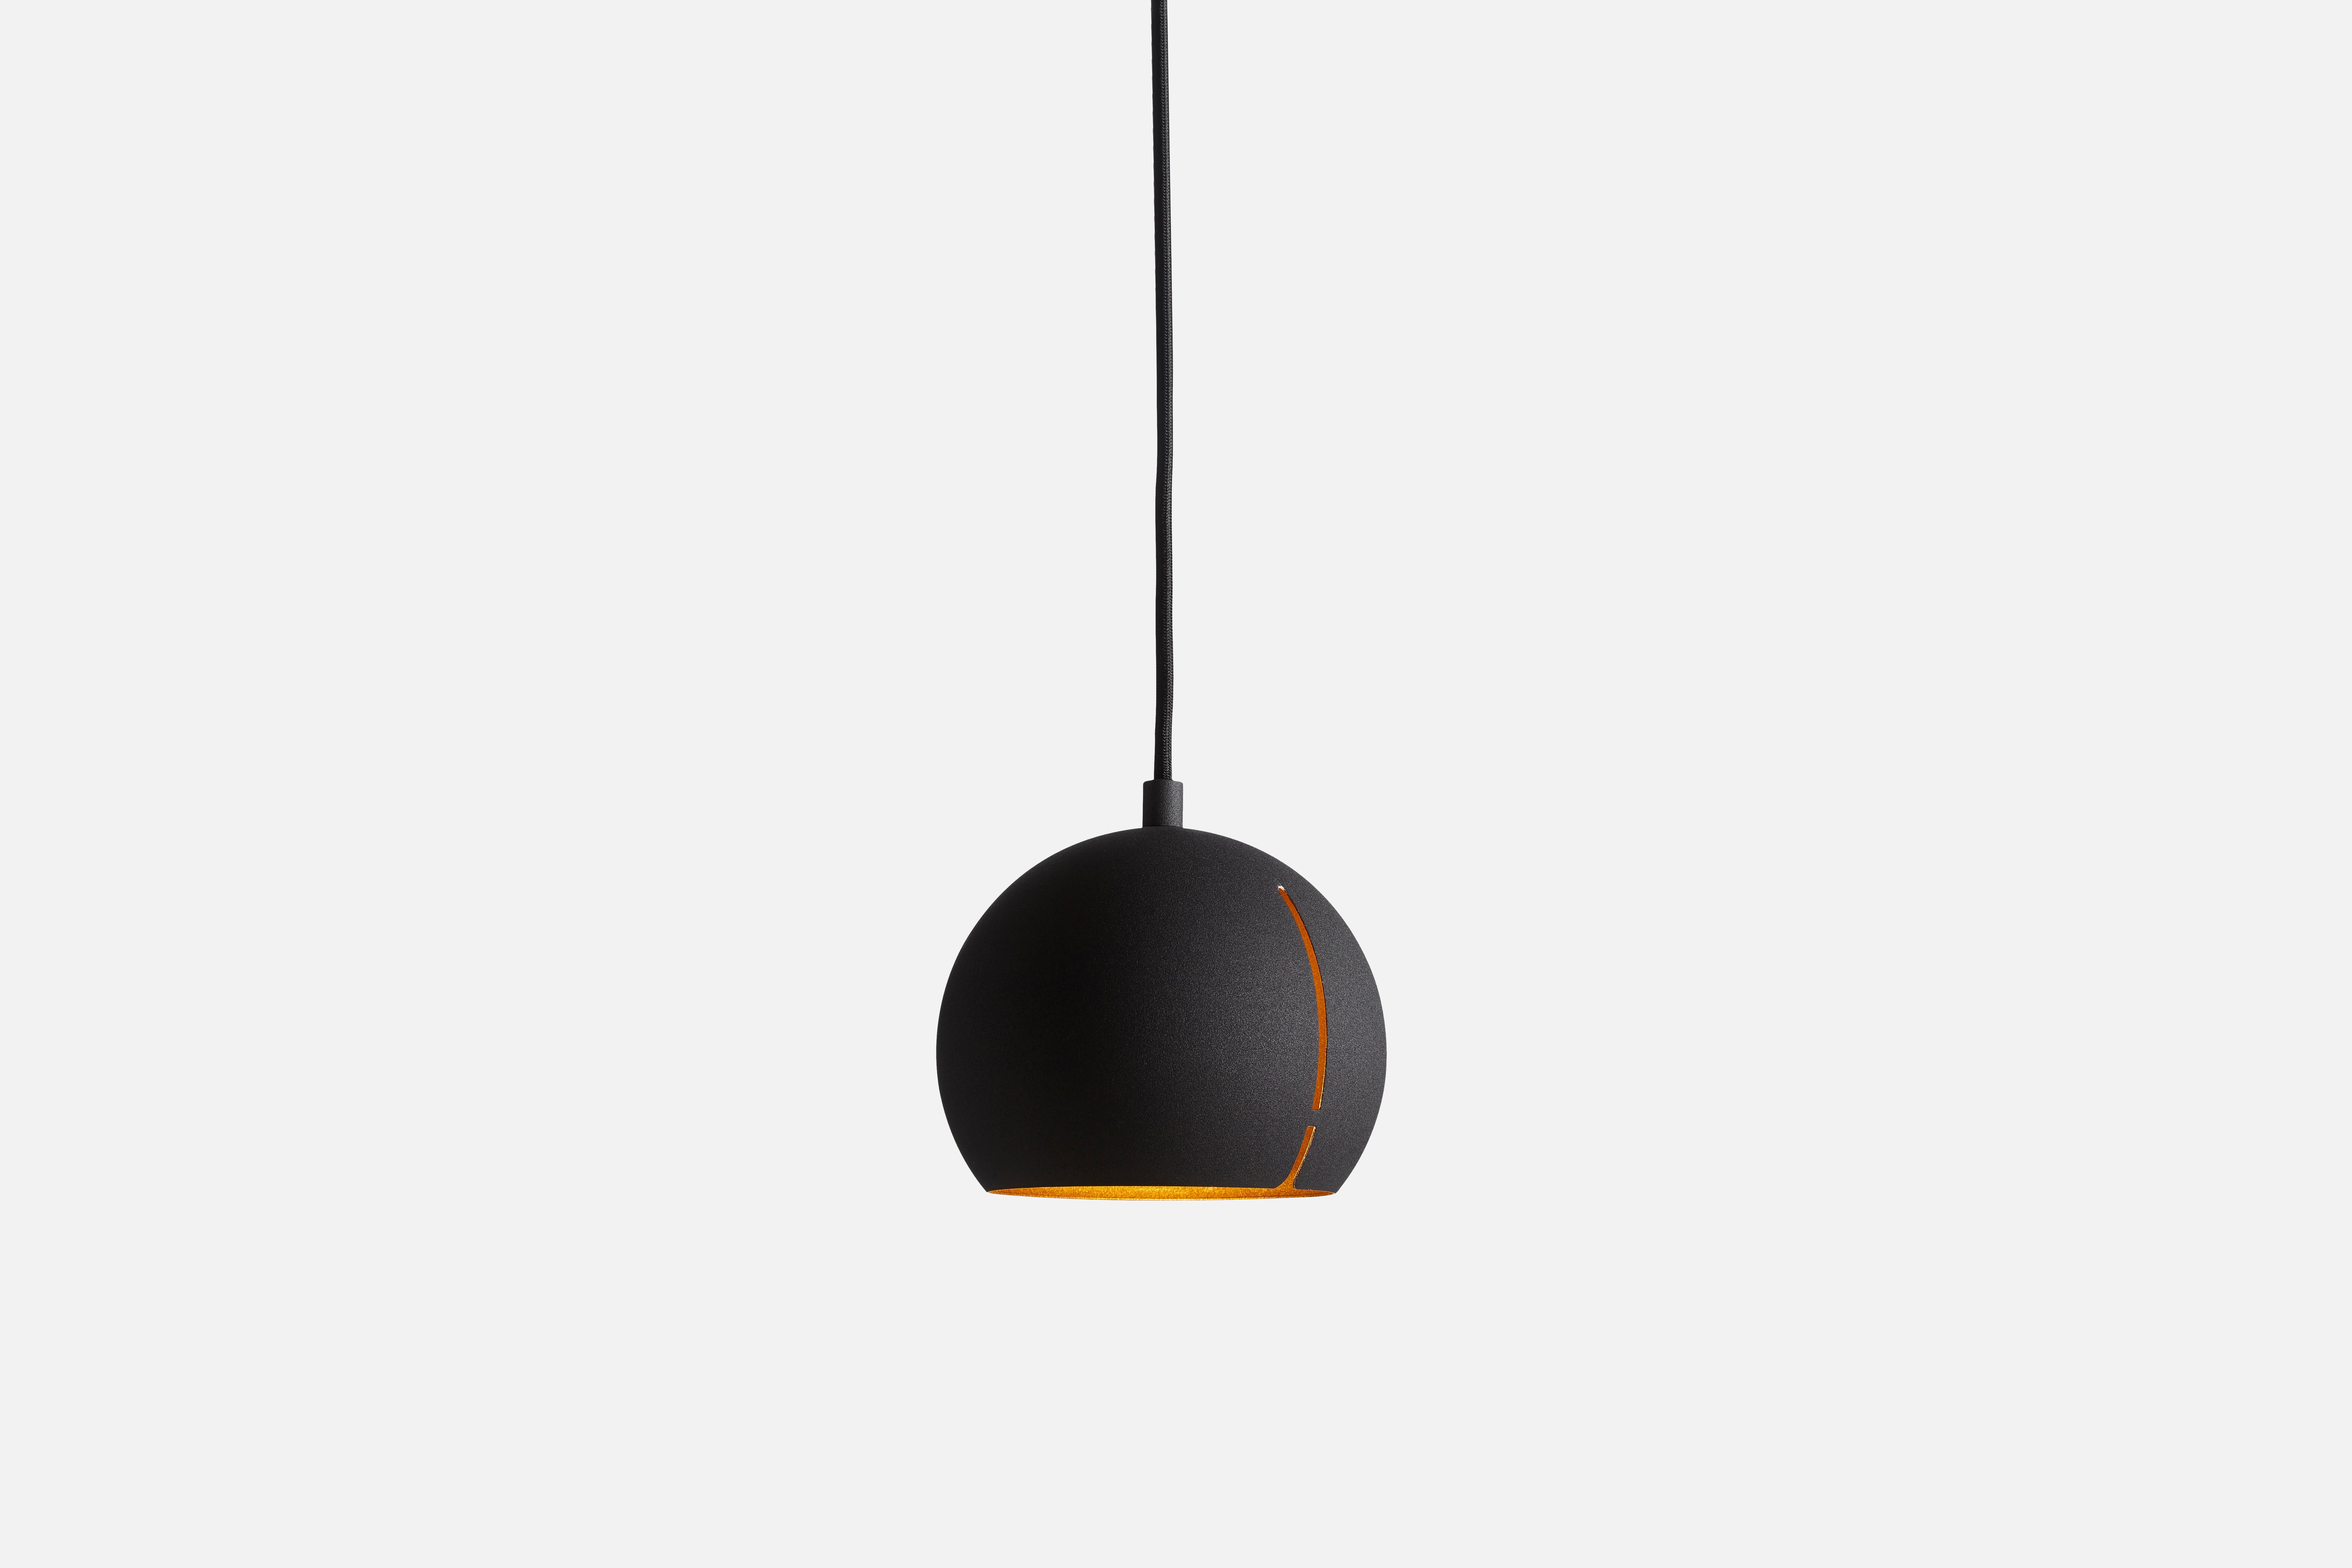 Lampe pendante Round Gap de Nur Design
Matériaux : Métal.
Dimensions : D 15 x H 14 cm

NUR design est un studio de design danois qui se concentre sur les traditions nordiques et s'efforce de créer un design classique et fonctionnel. En allemand, le